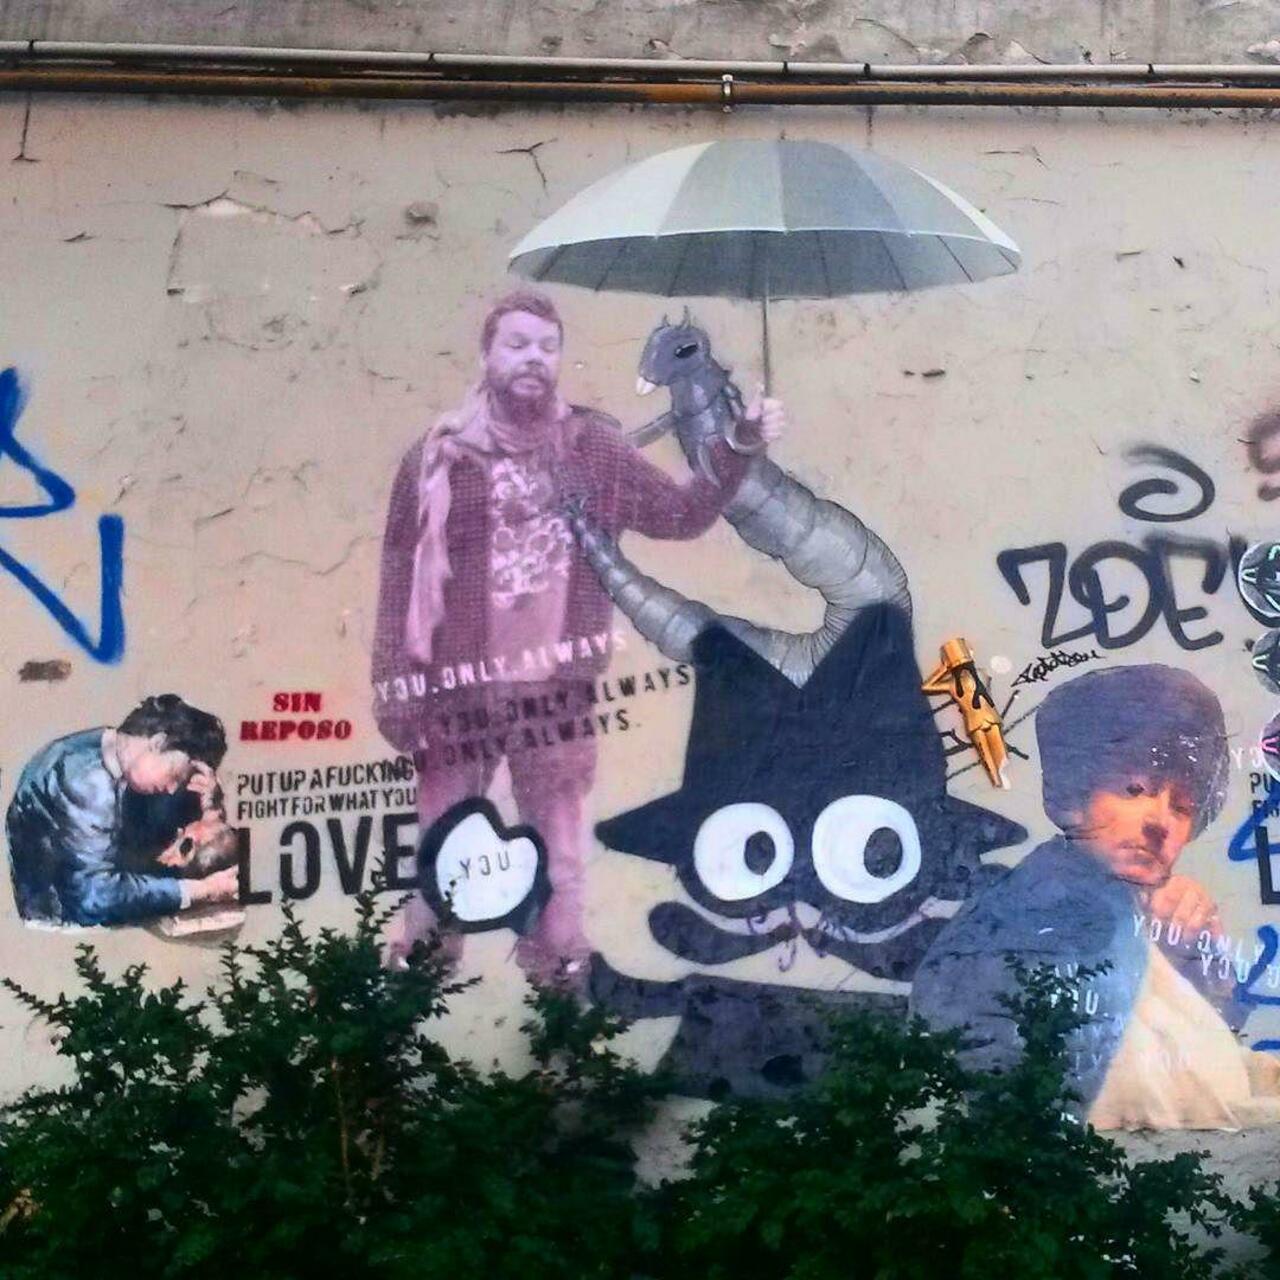 #Paris #graffiti photo by @princessepepett http://ift.tt/1VNie7m #StreetArt http://t.co/t02kZd6B1L